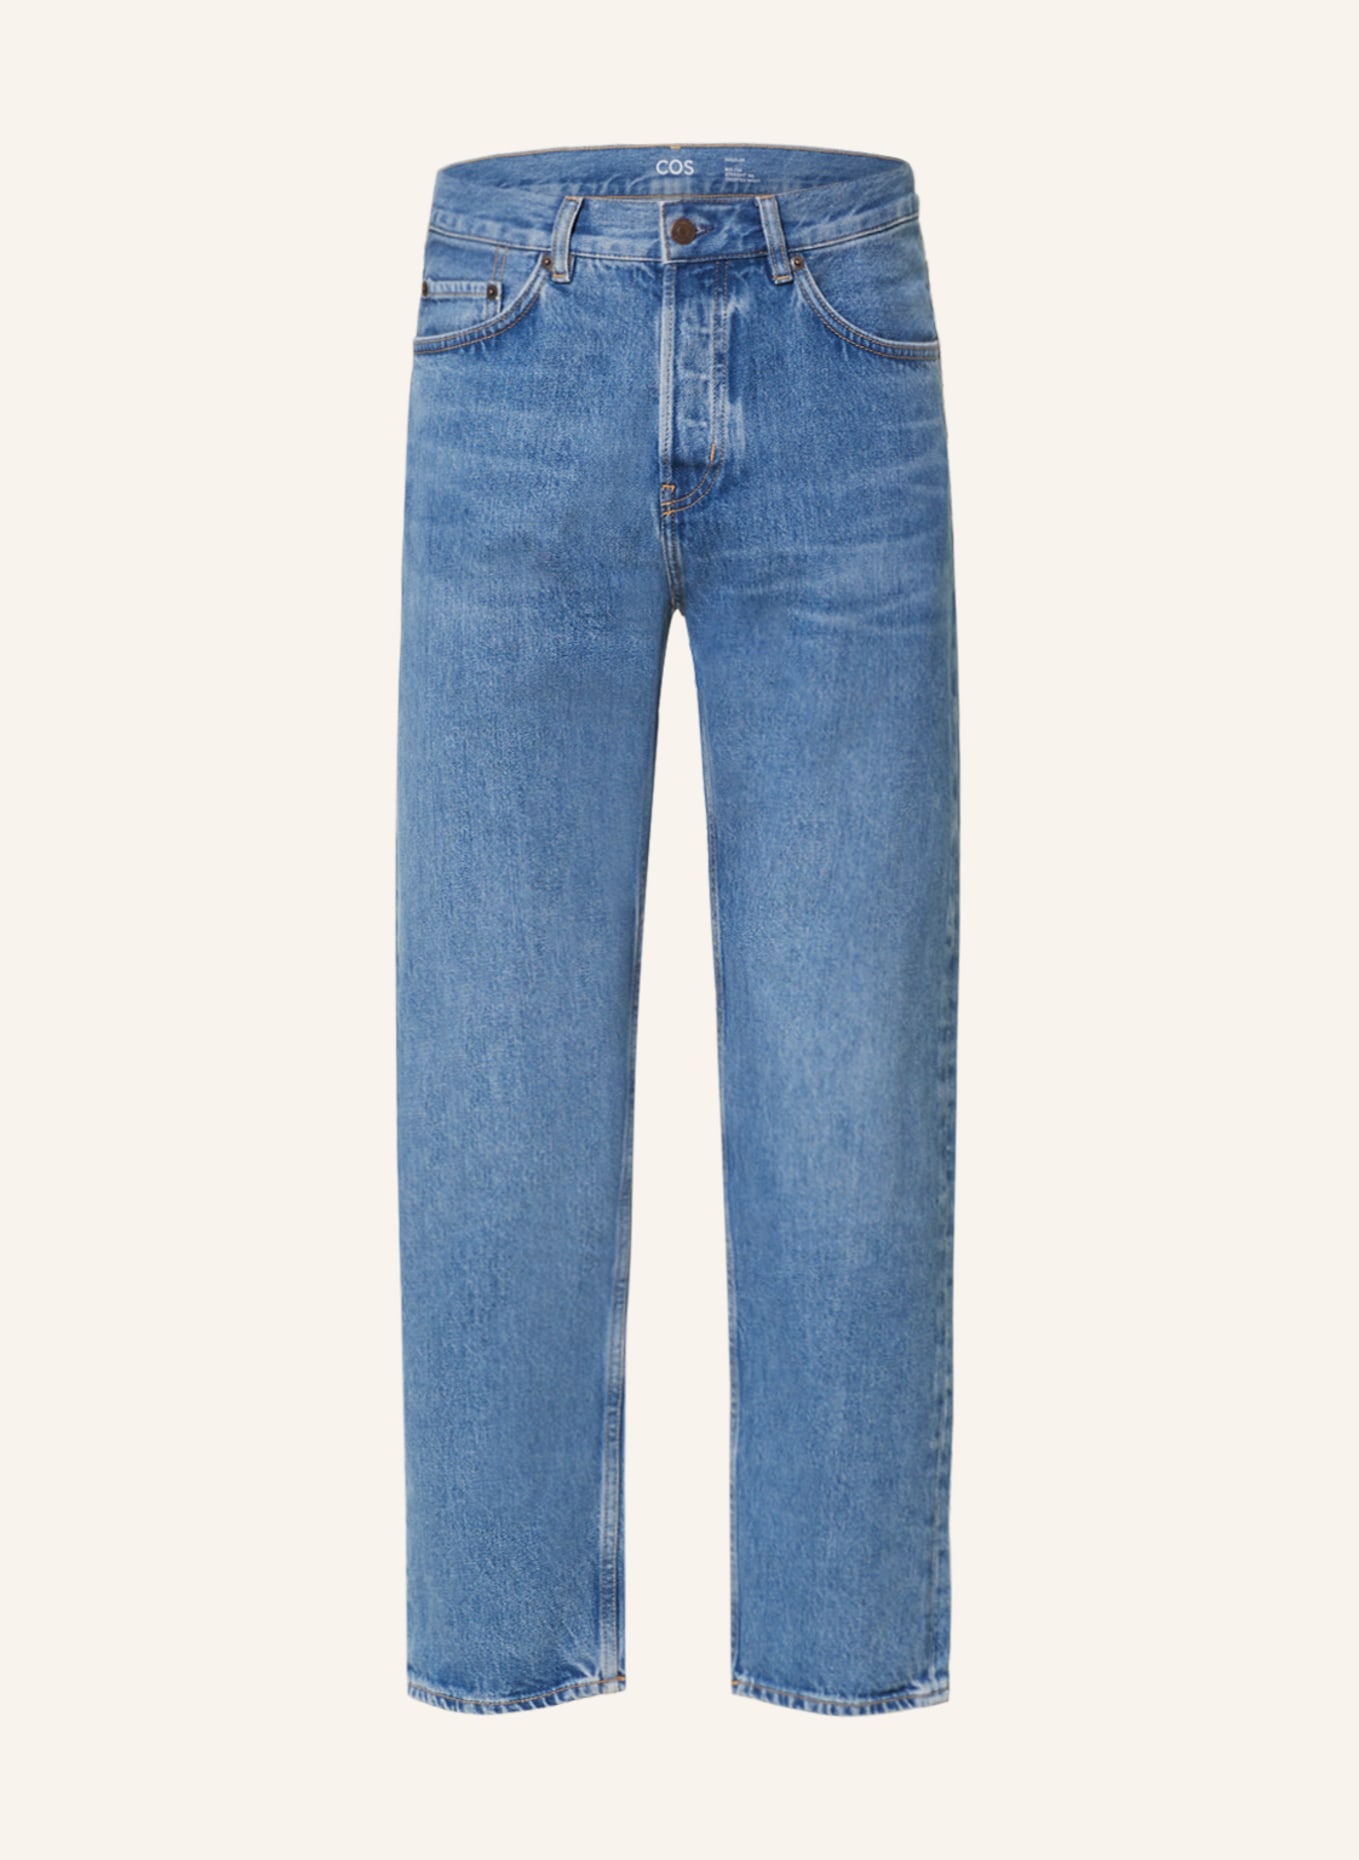 COS Jeans slim fit, Color: 101 LIGHT BLUE (Image 1)